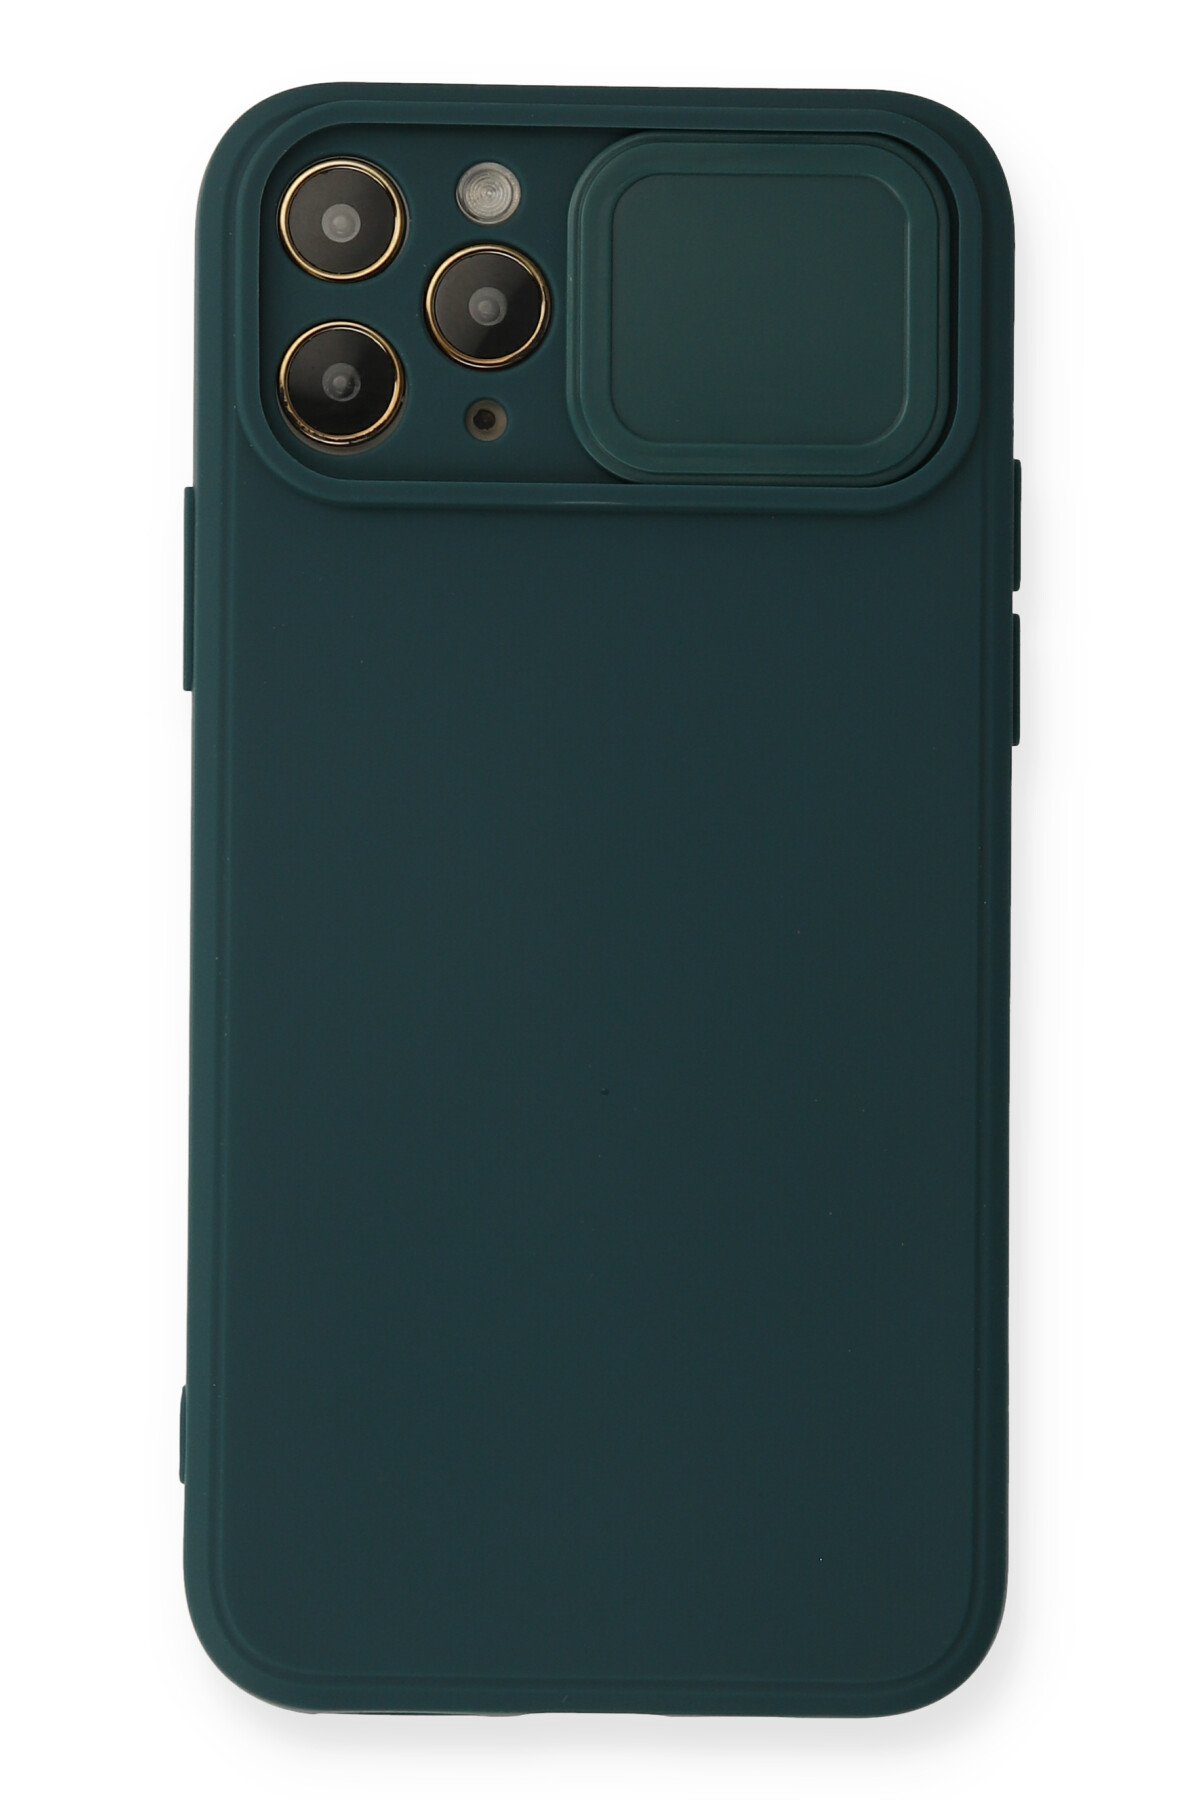 Newface iPhone 11 Pro Max Kılıf Lansman Legant Silikon - Bordo